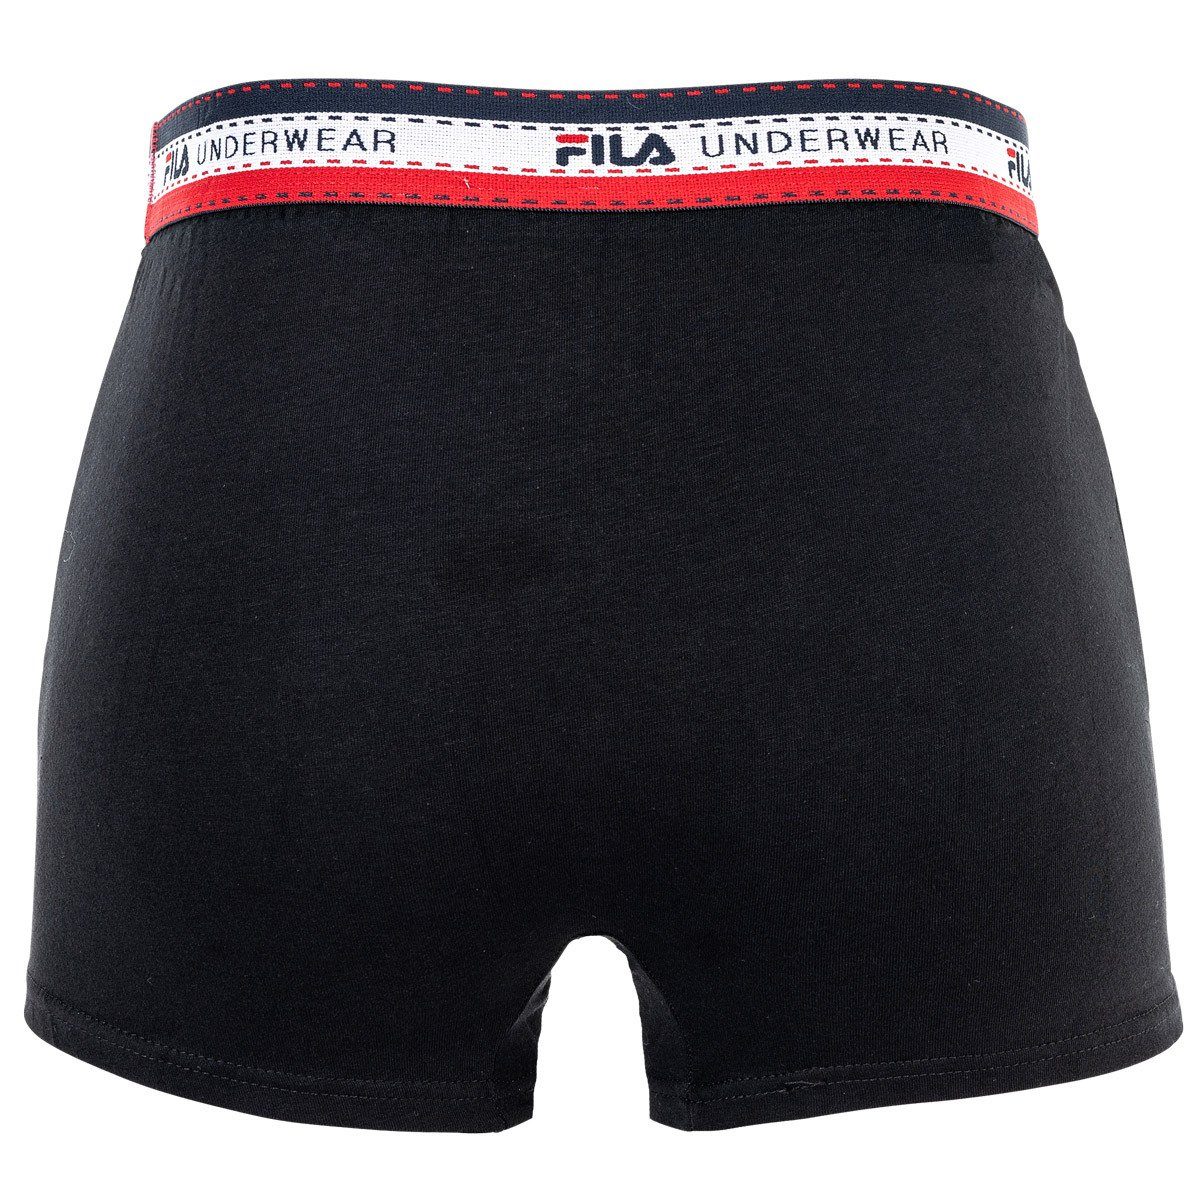 Fila Boxer Herren Boxer Schwarz/Weiß/Grau/Blau Pack 4er Logobund, Cotton - Shorts